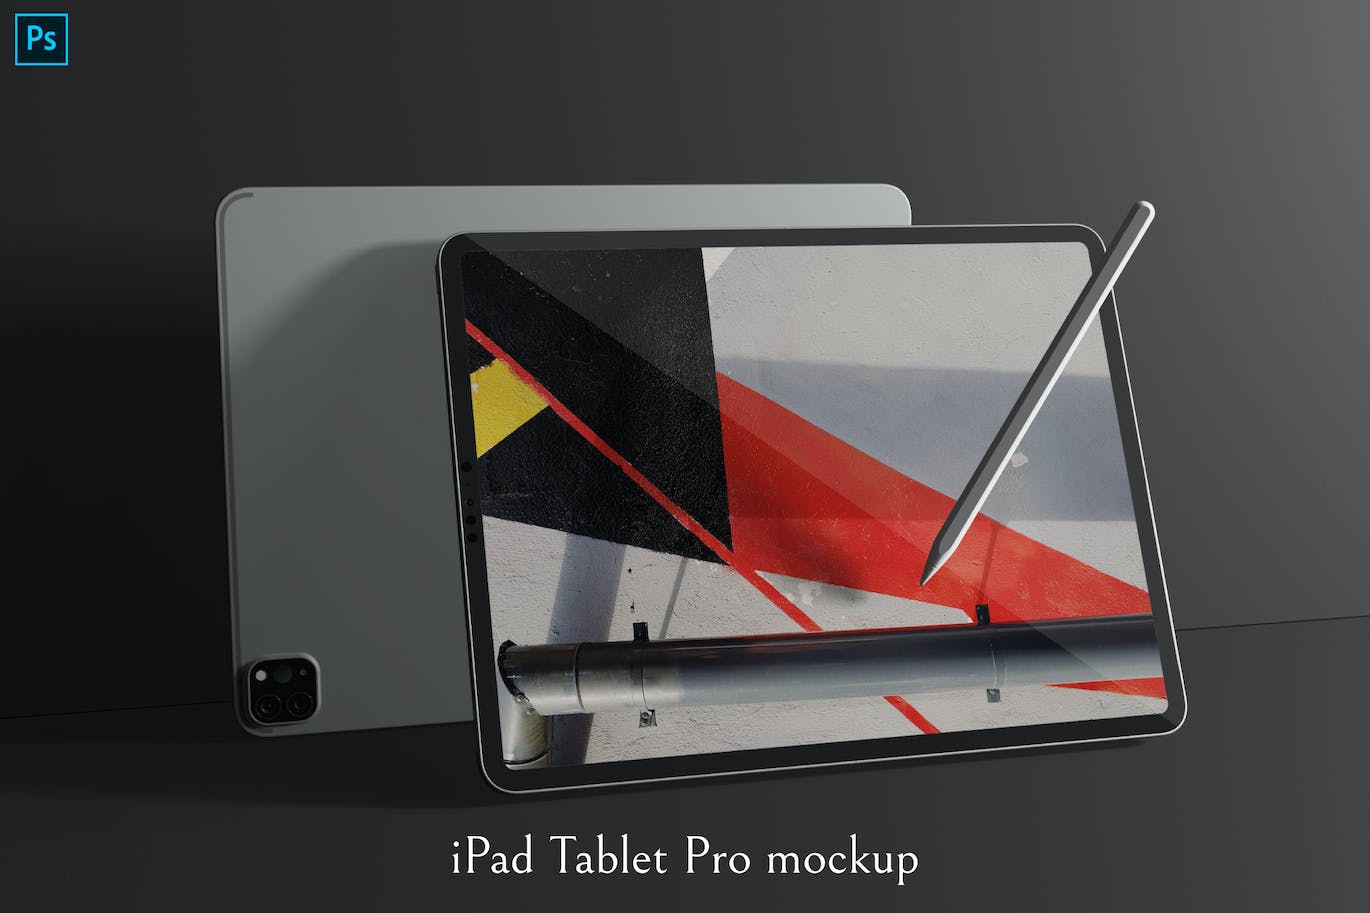 深空灰iPad Pro平板电脑样机 iPad Tablet Pro mockup 样机素材 第1张